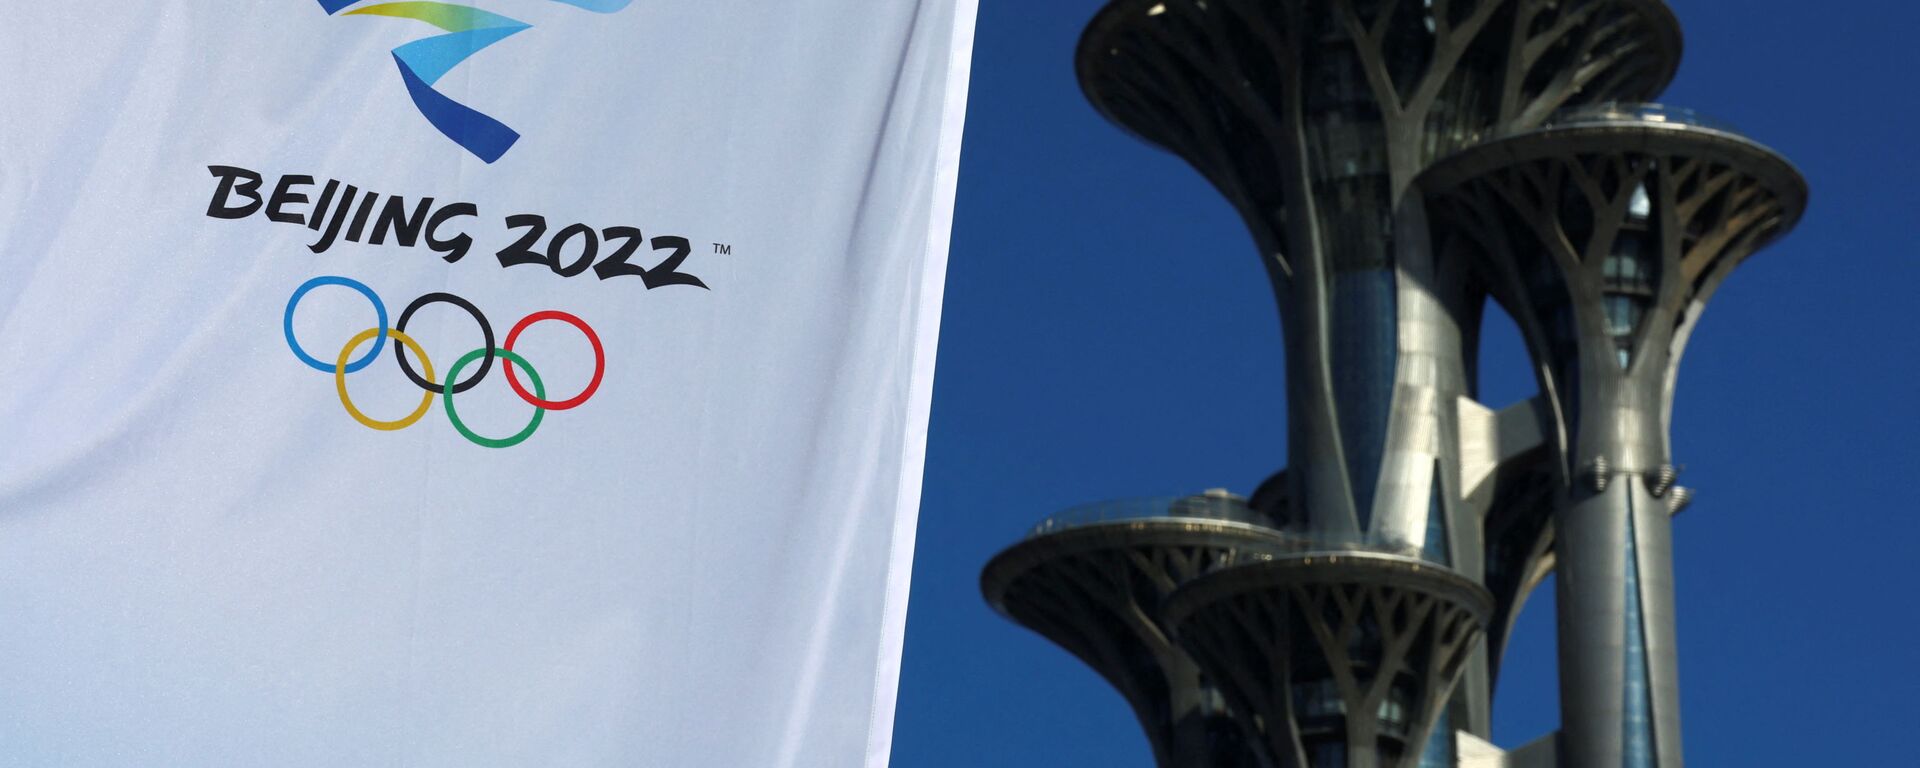 Олимпийская башня в Пекине возле Главного пресс-центра в преддверии зимних Олимпийских игр 2022 года - Sputnik Латвия, 1920, 29.01.2022